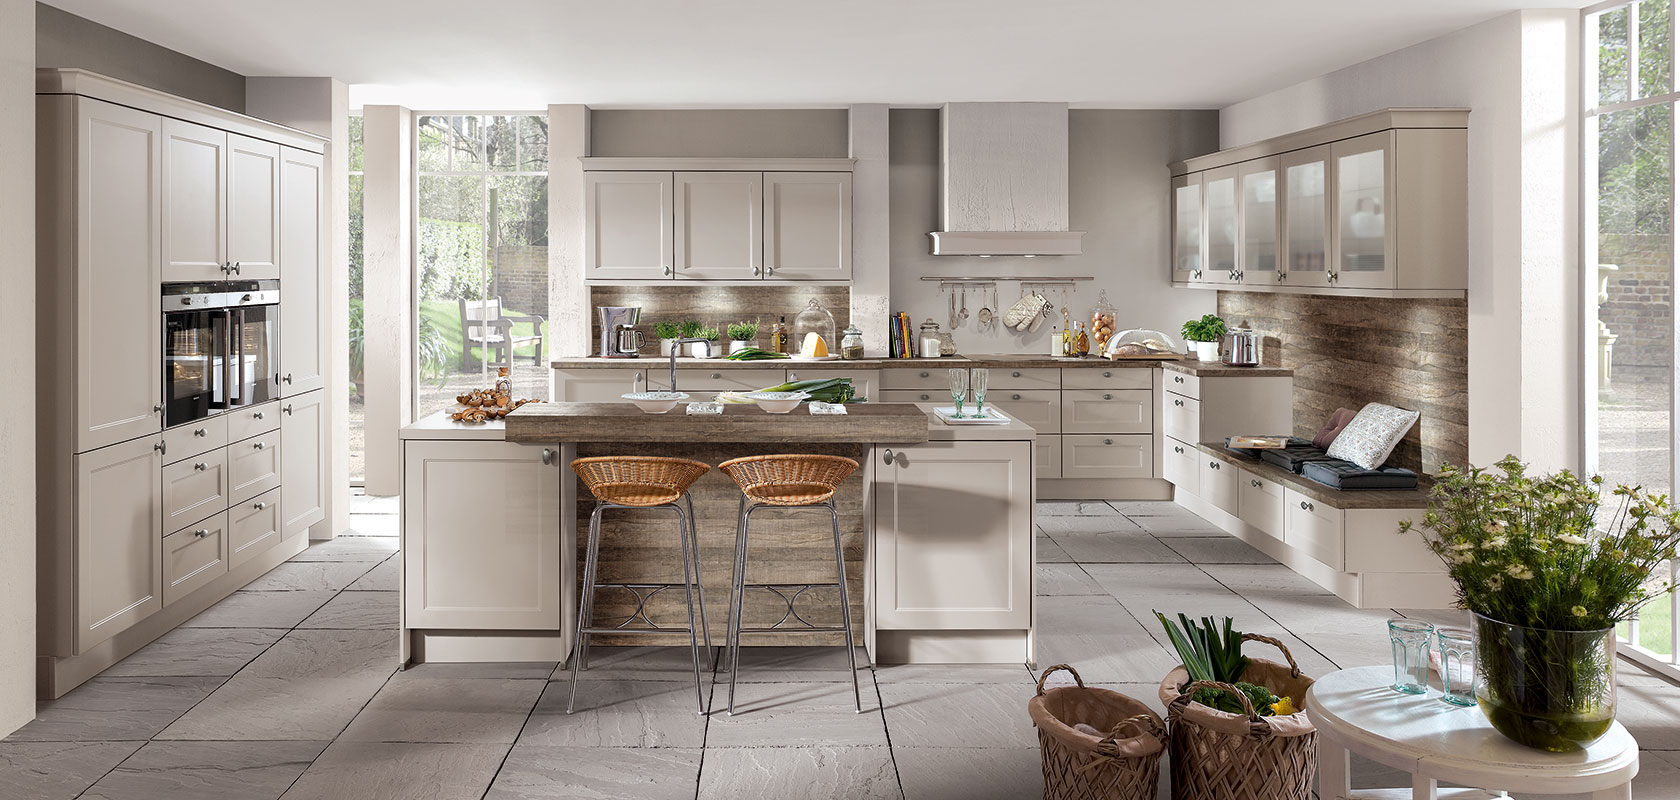 Espaciosa cocina moderna con gabinetes beige, una isla con taburetes de mimbre y electrodomésticos de acero inoxidable iluminados por luz natural de grandes ventanas.